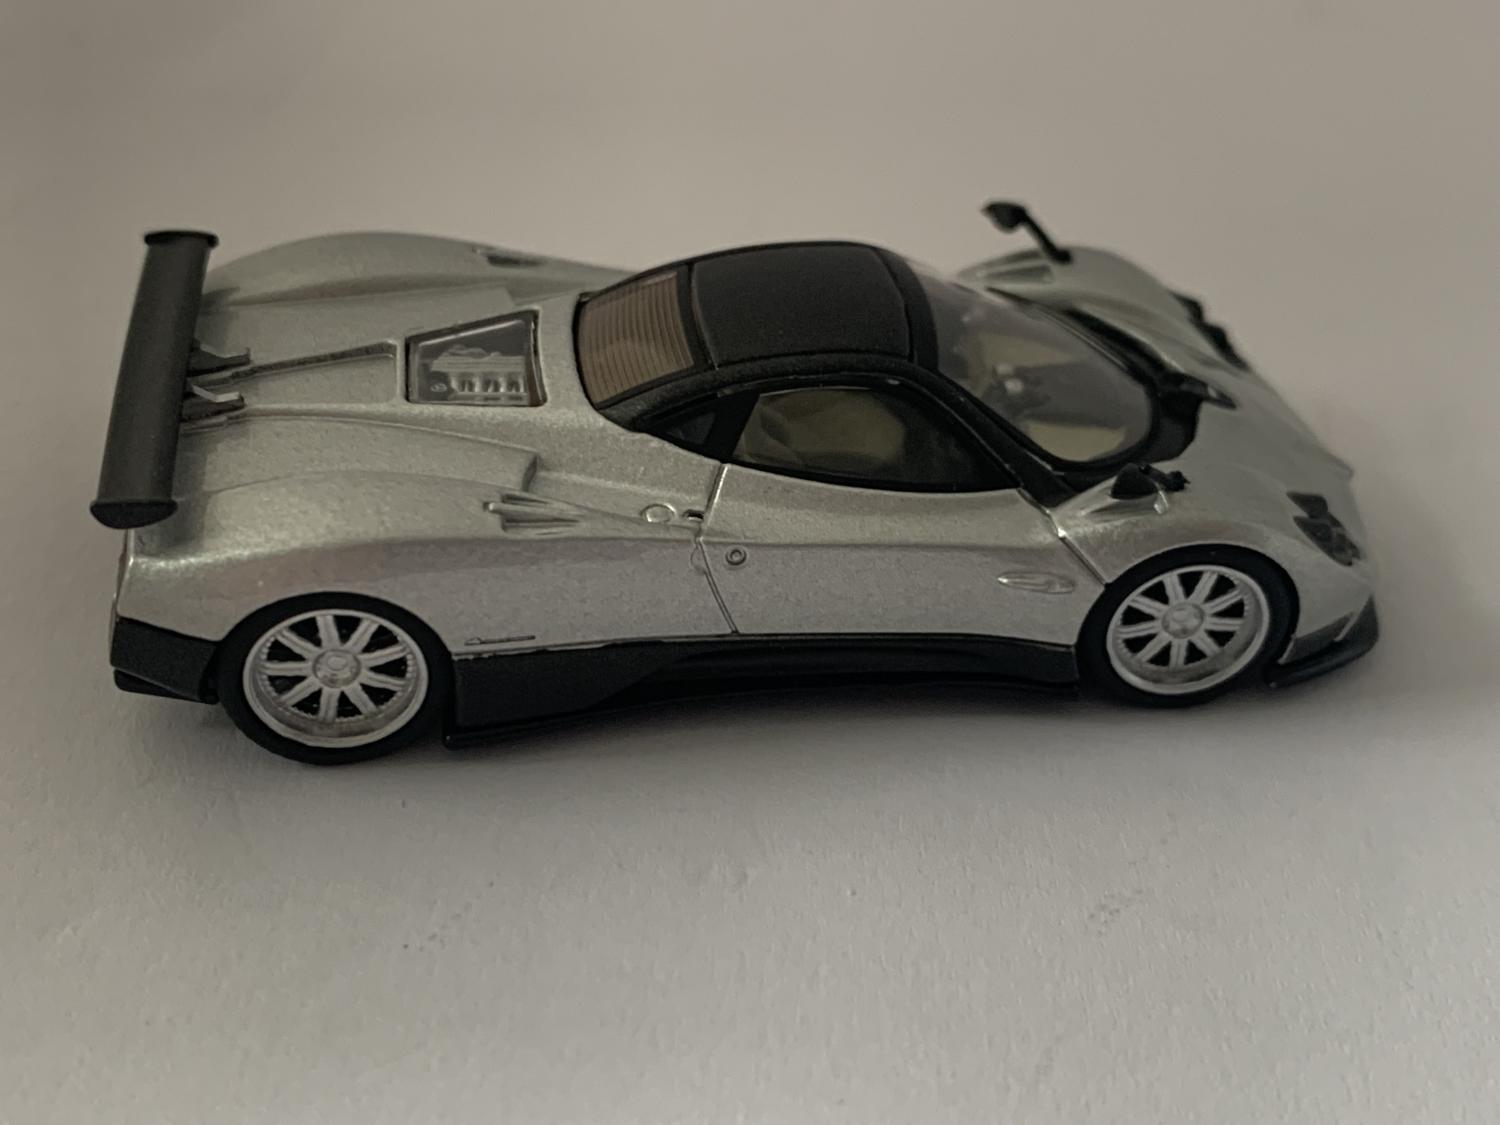 Pagani Zonda F in silver 1:64 scale model from Mini GT